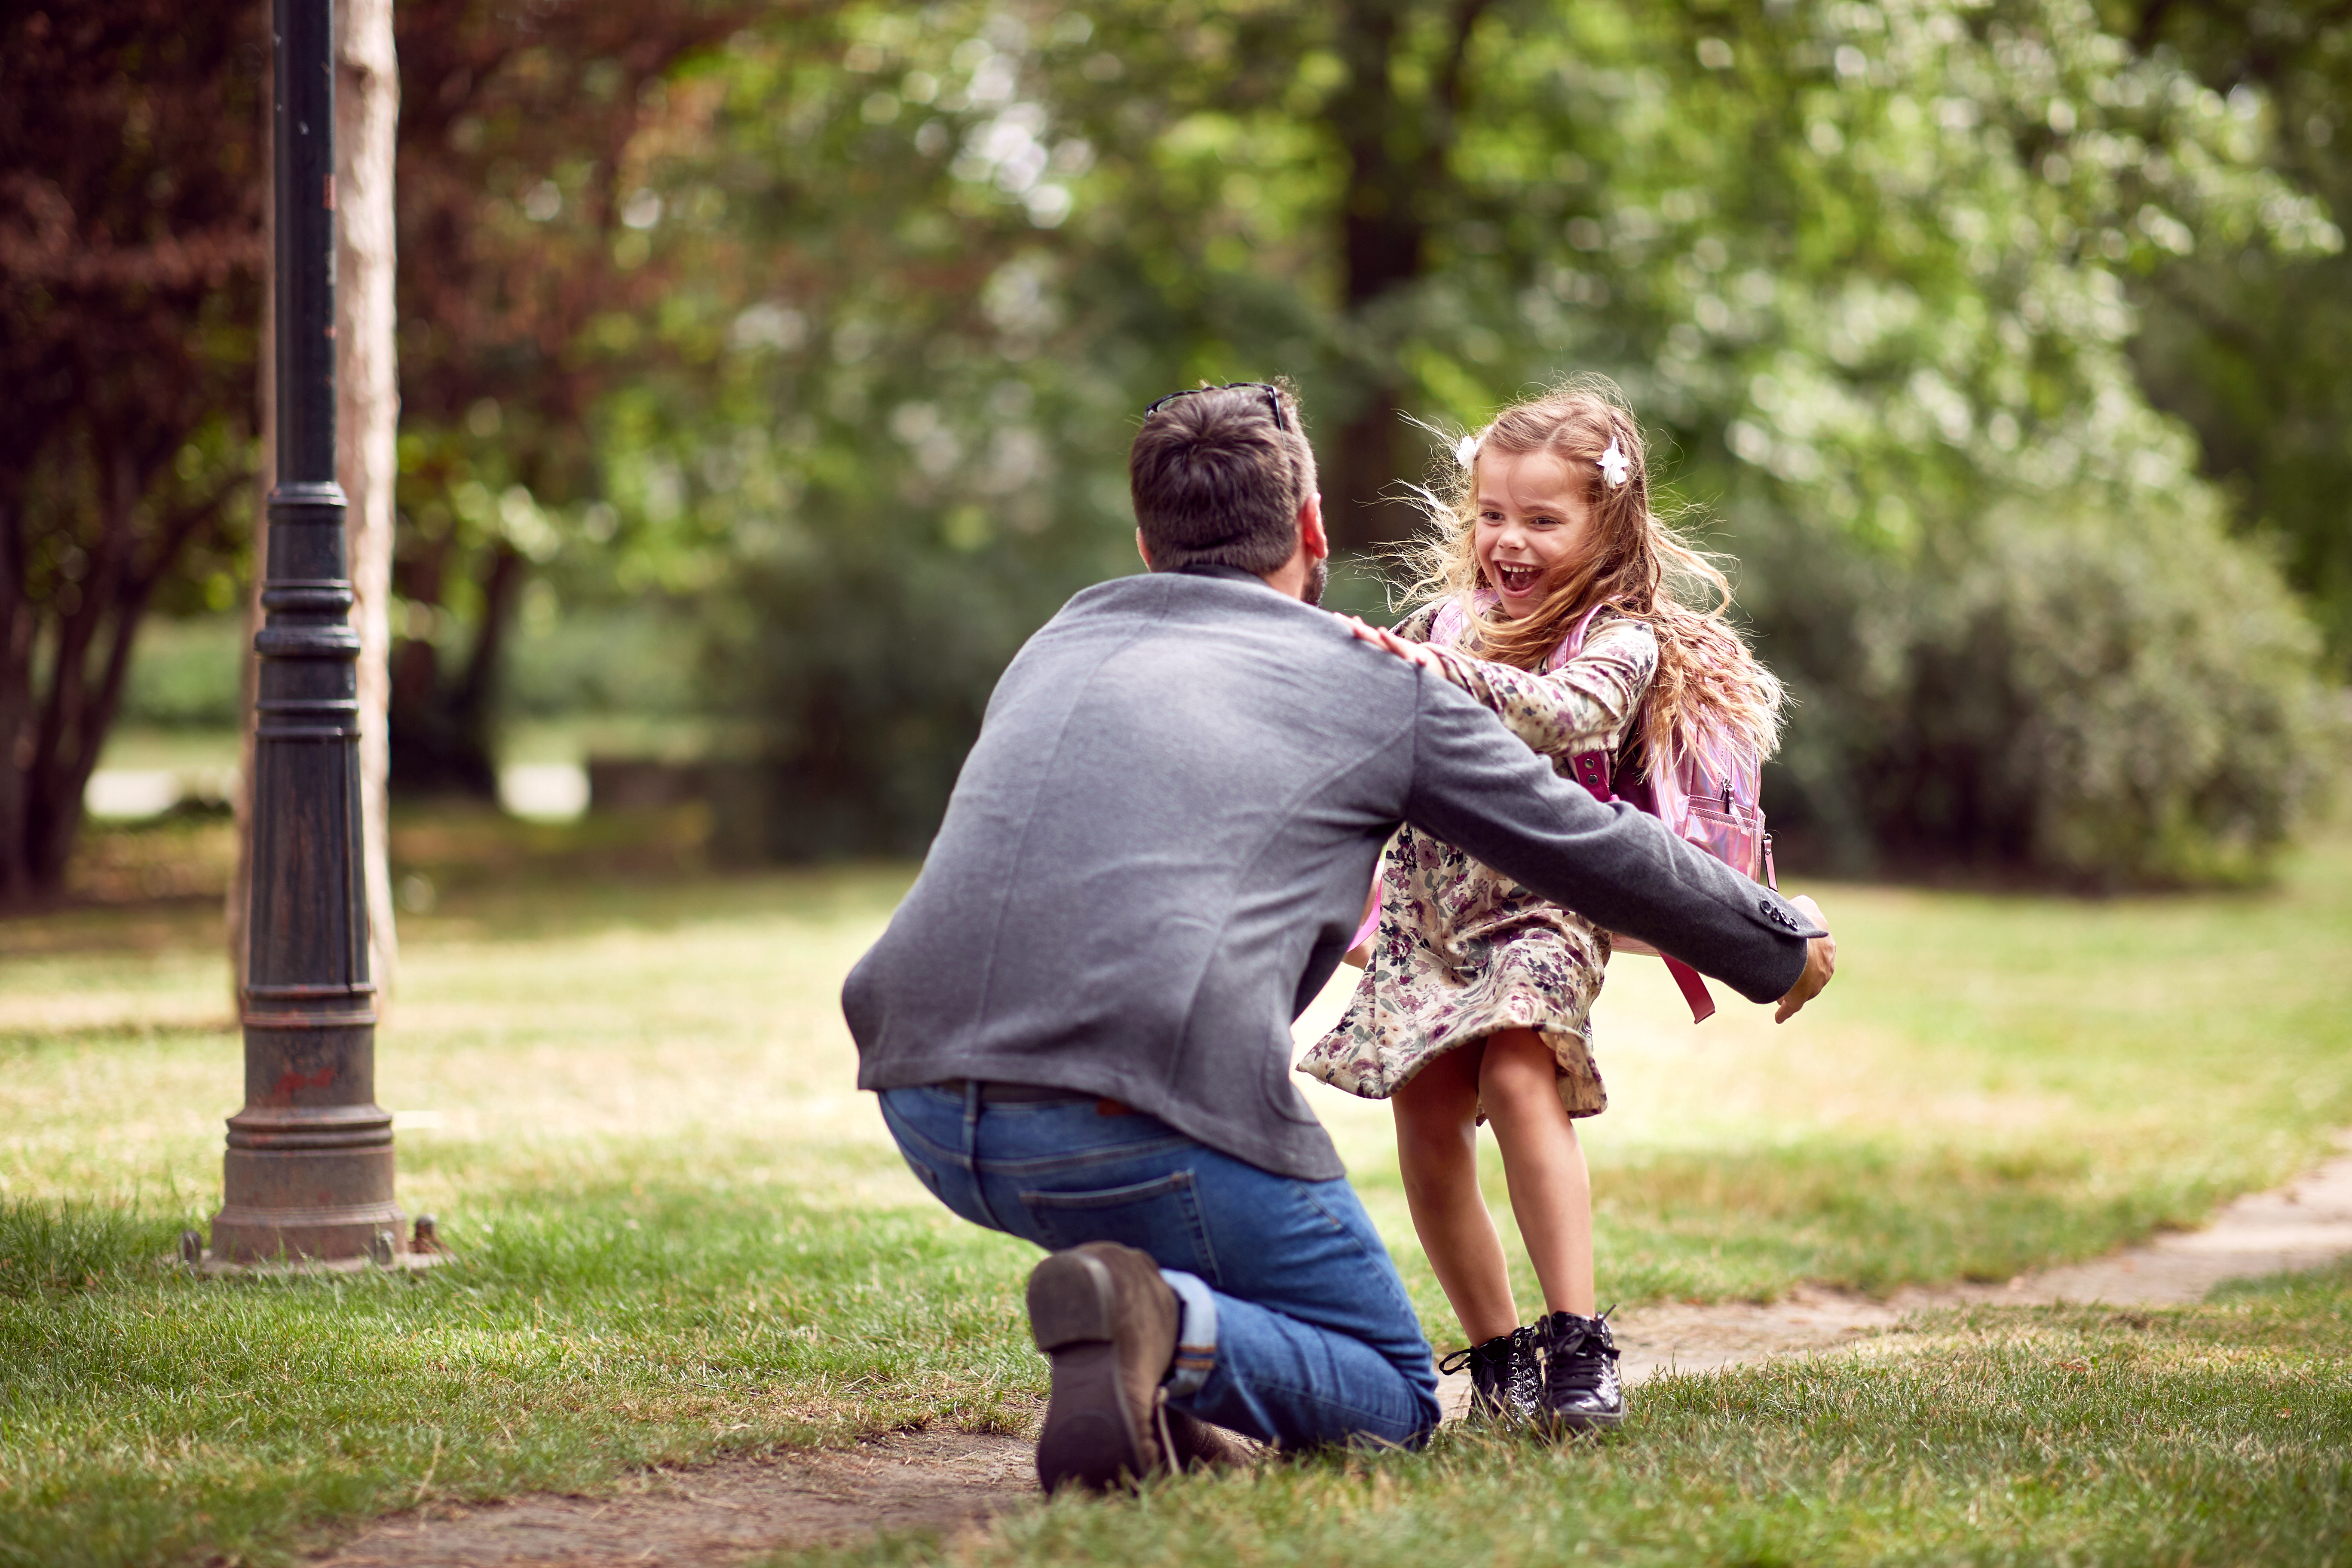 Homme jouant avec une petite fille dans un parc | Source : Shutterstock